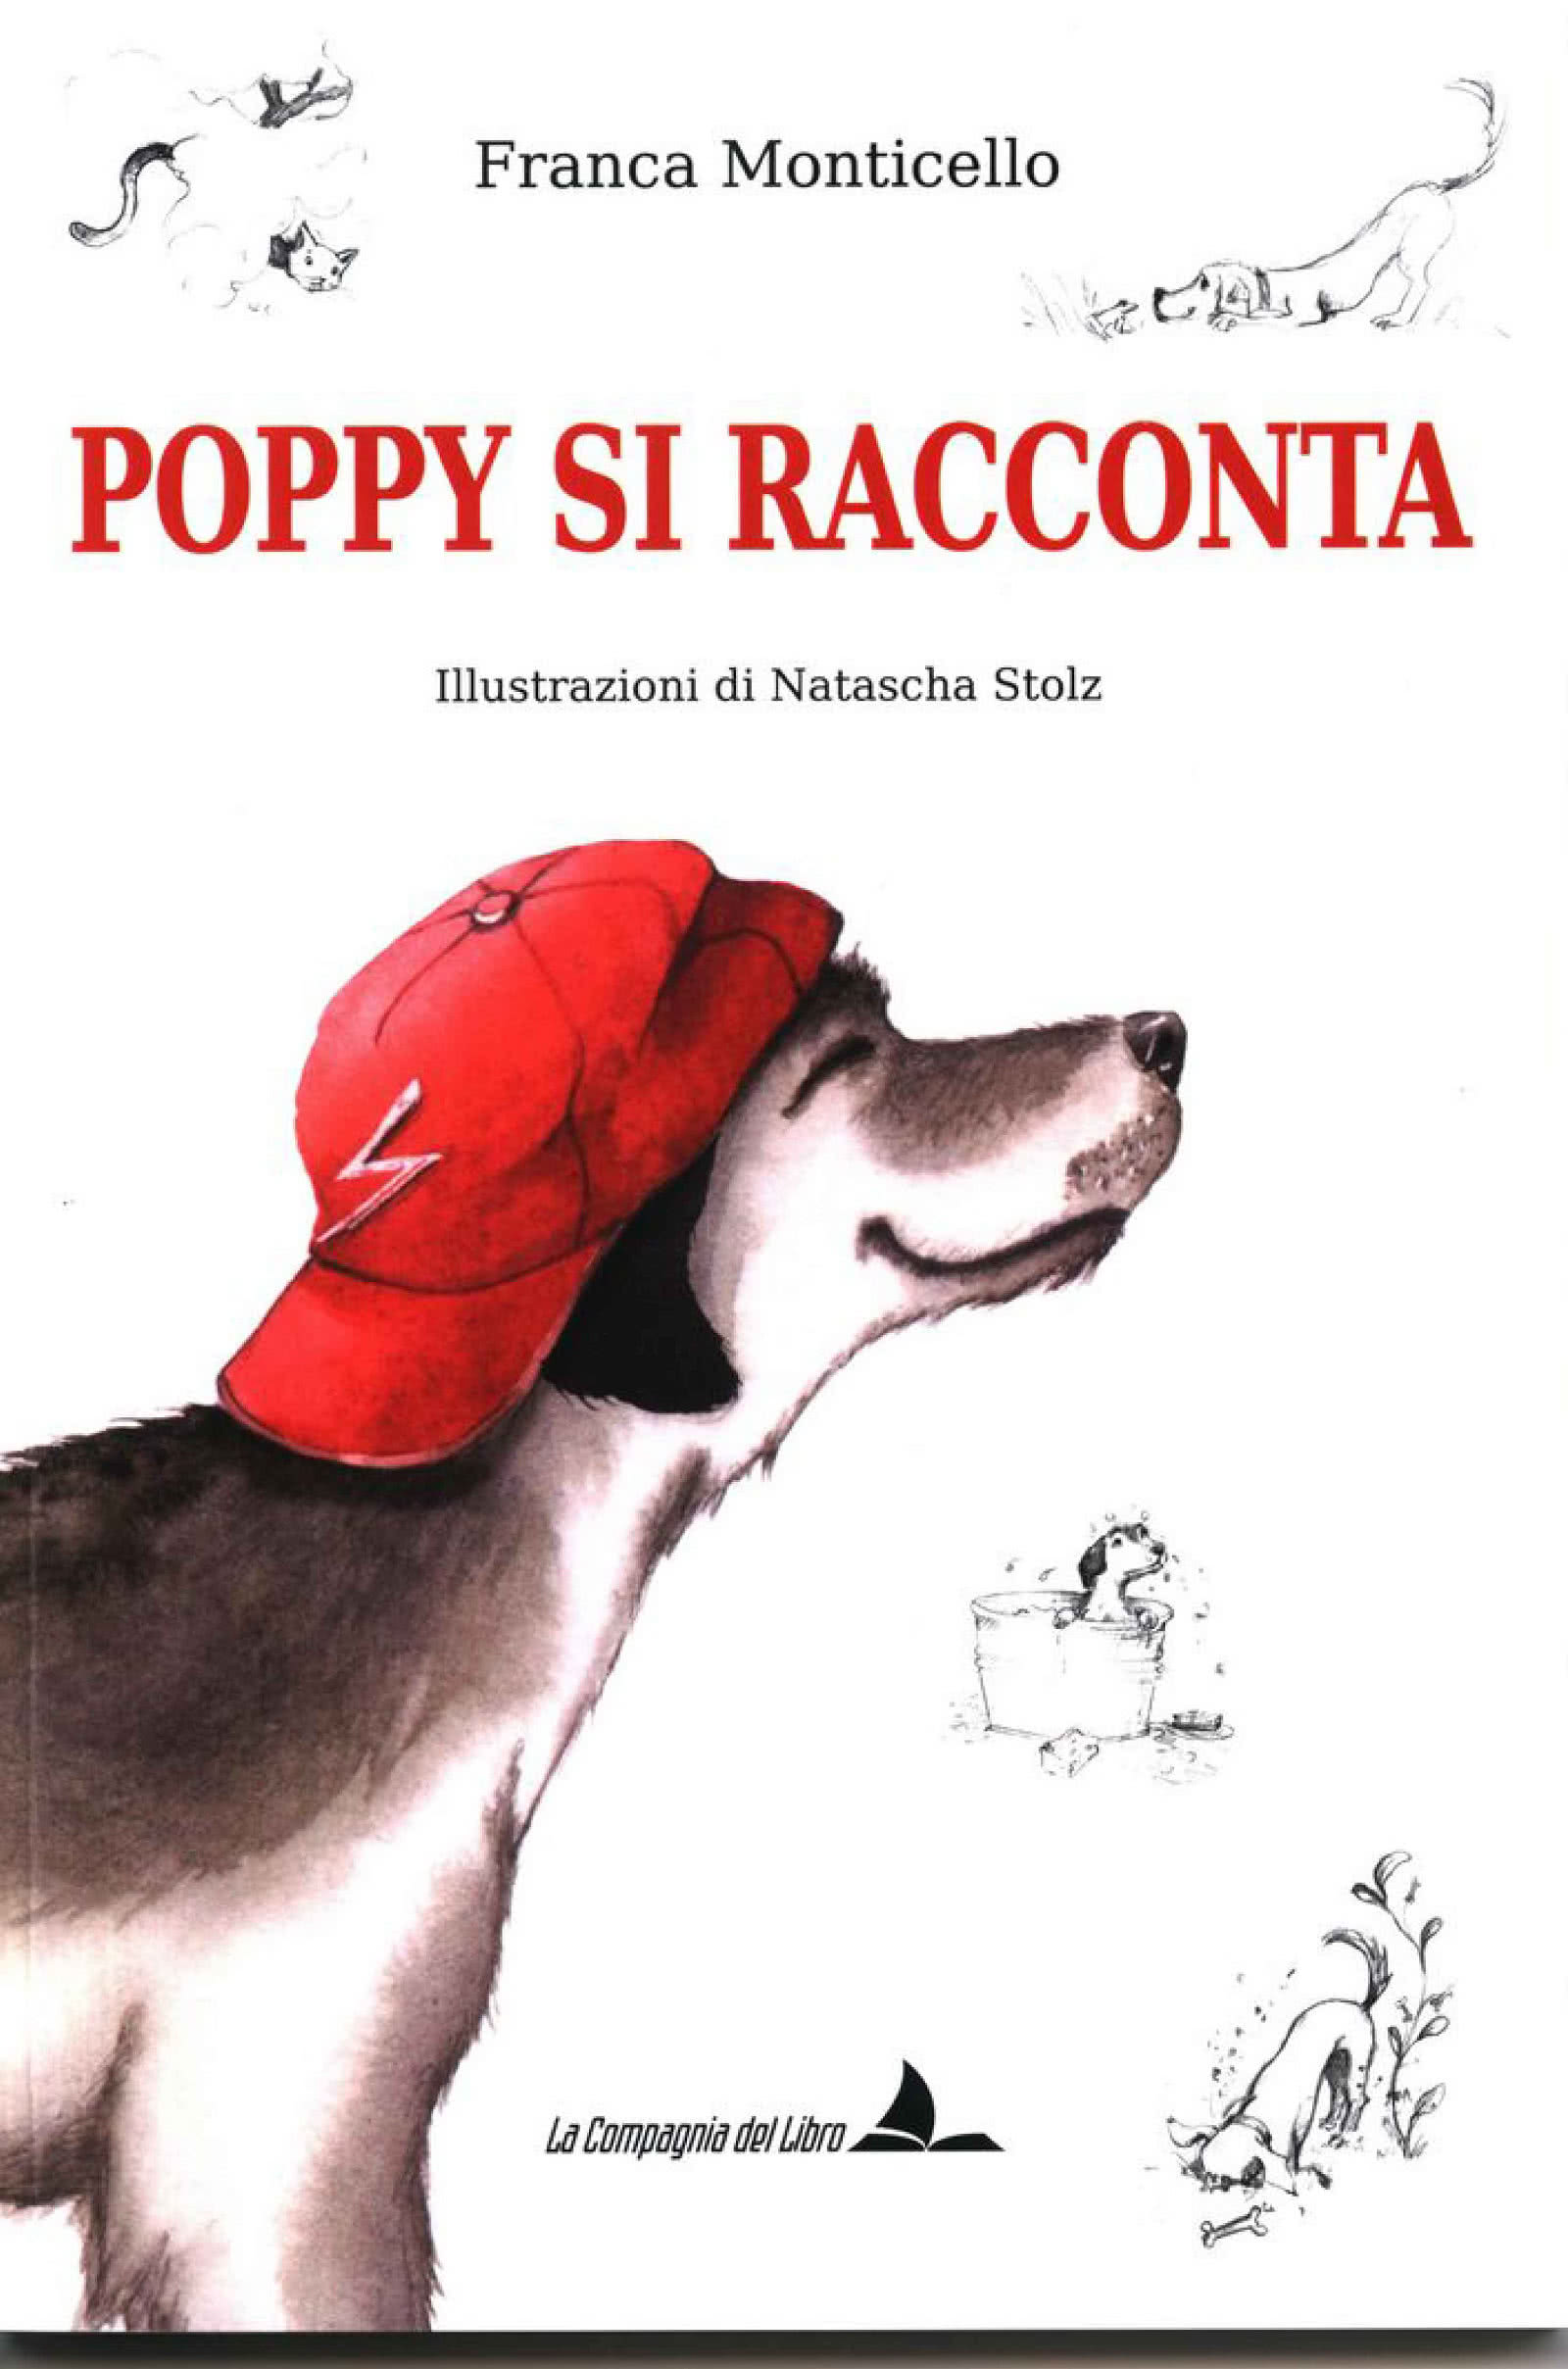 Copertina del libro Poppy si racconta scritto da Franca Monticello